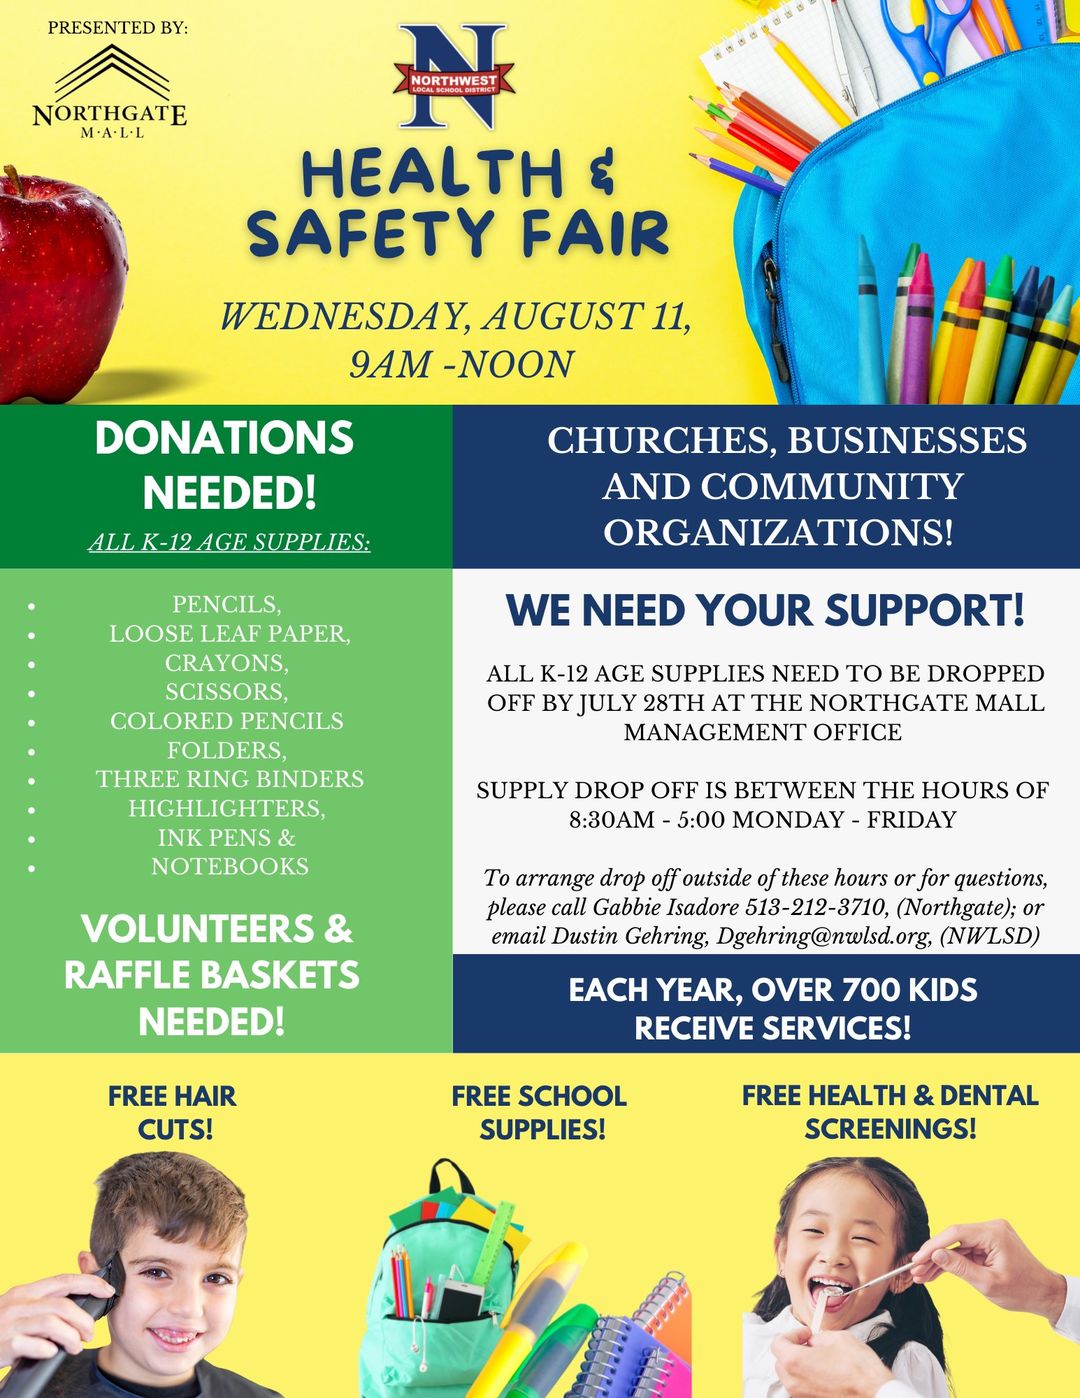 Northwest Schools Health & Safety Fair Information